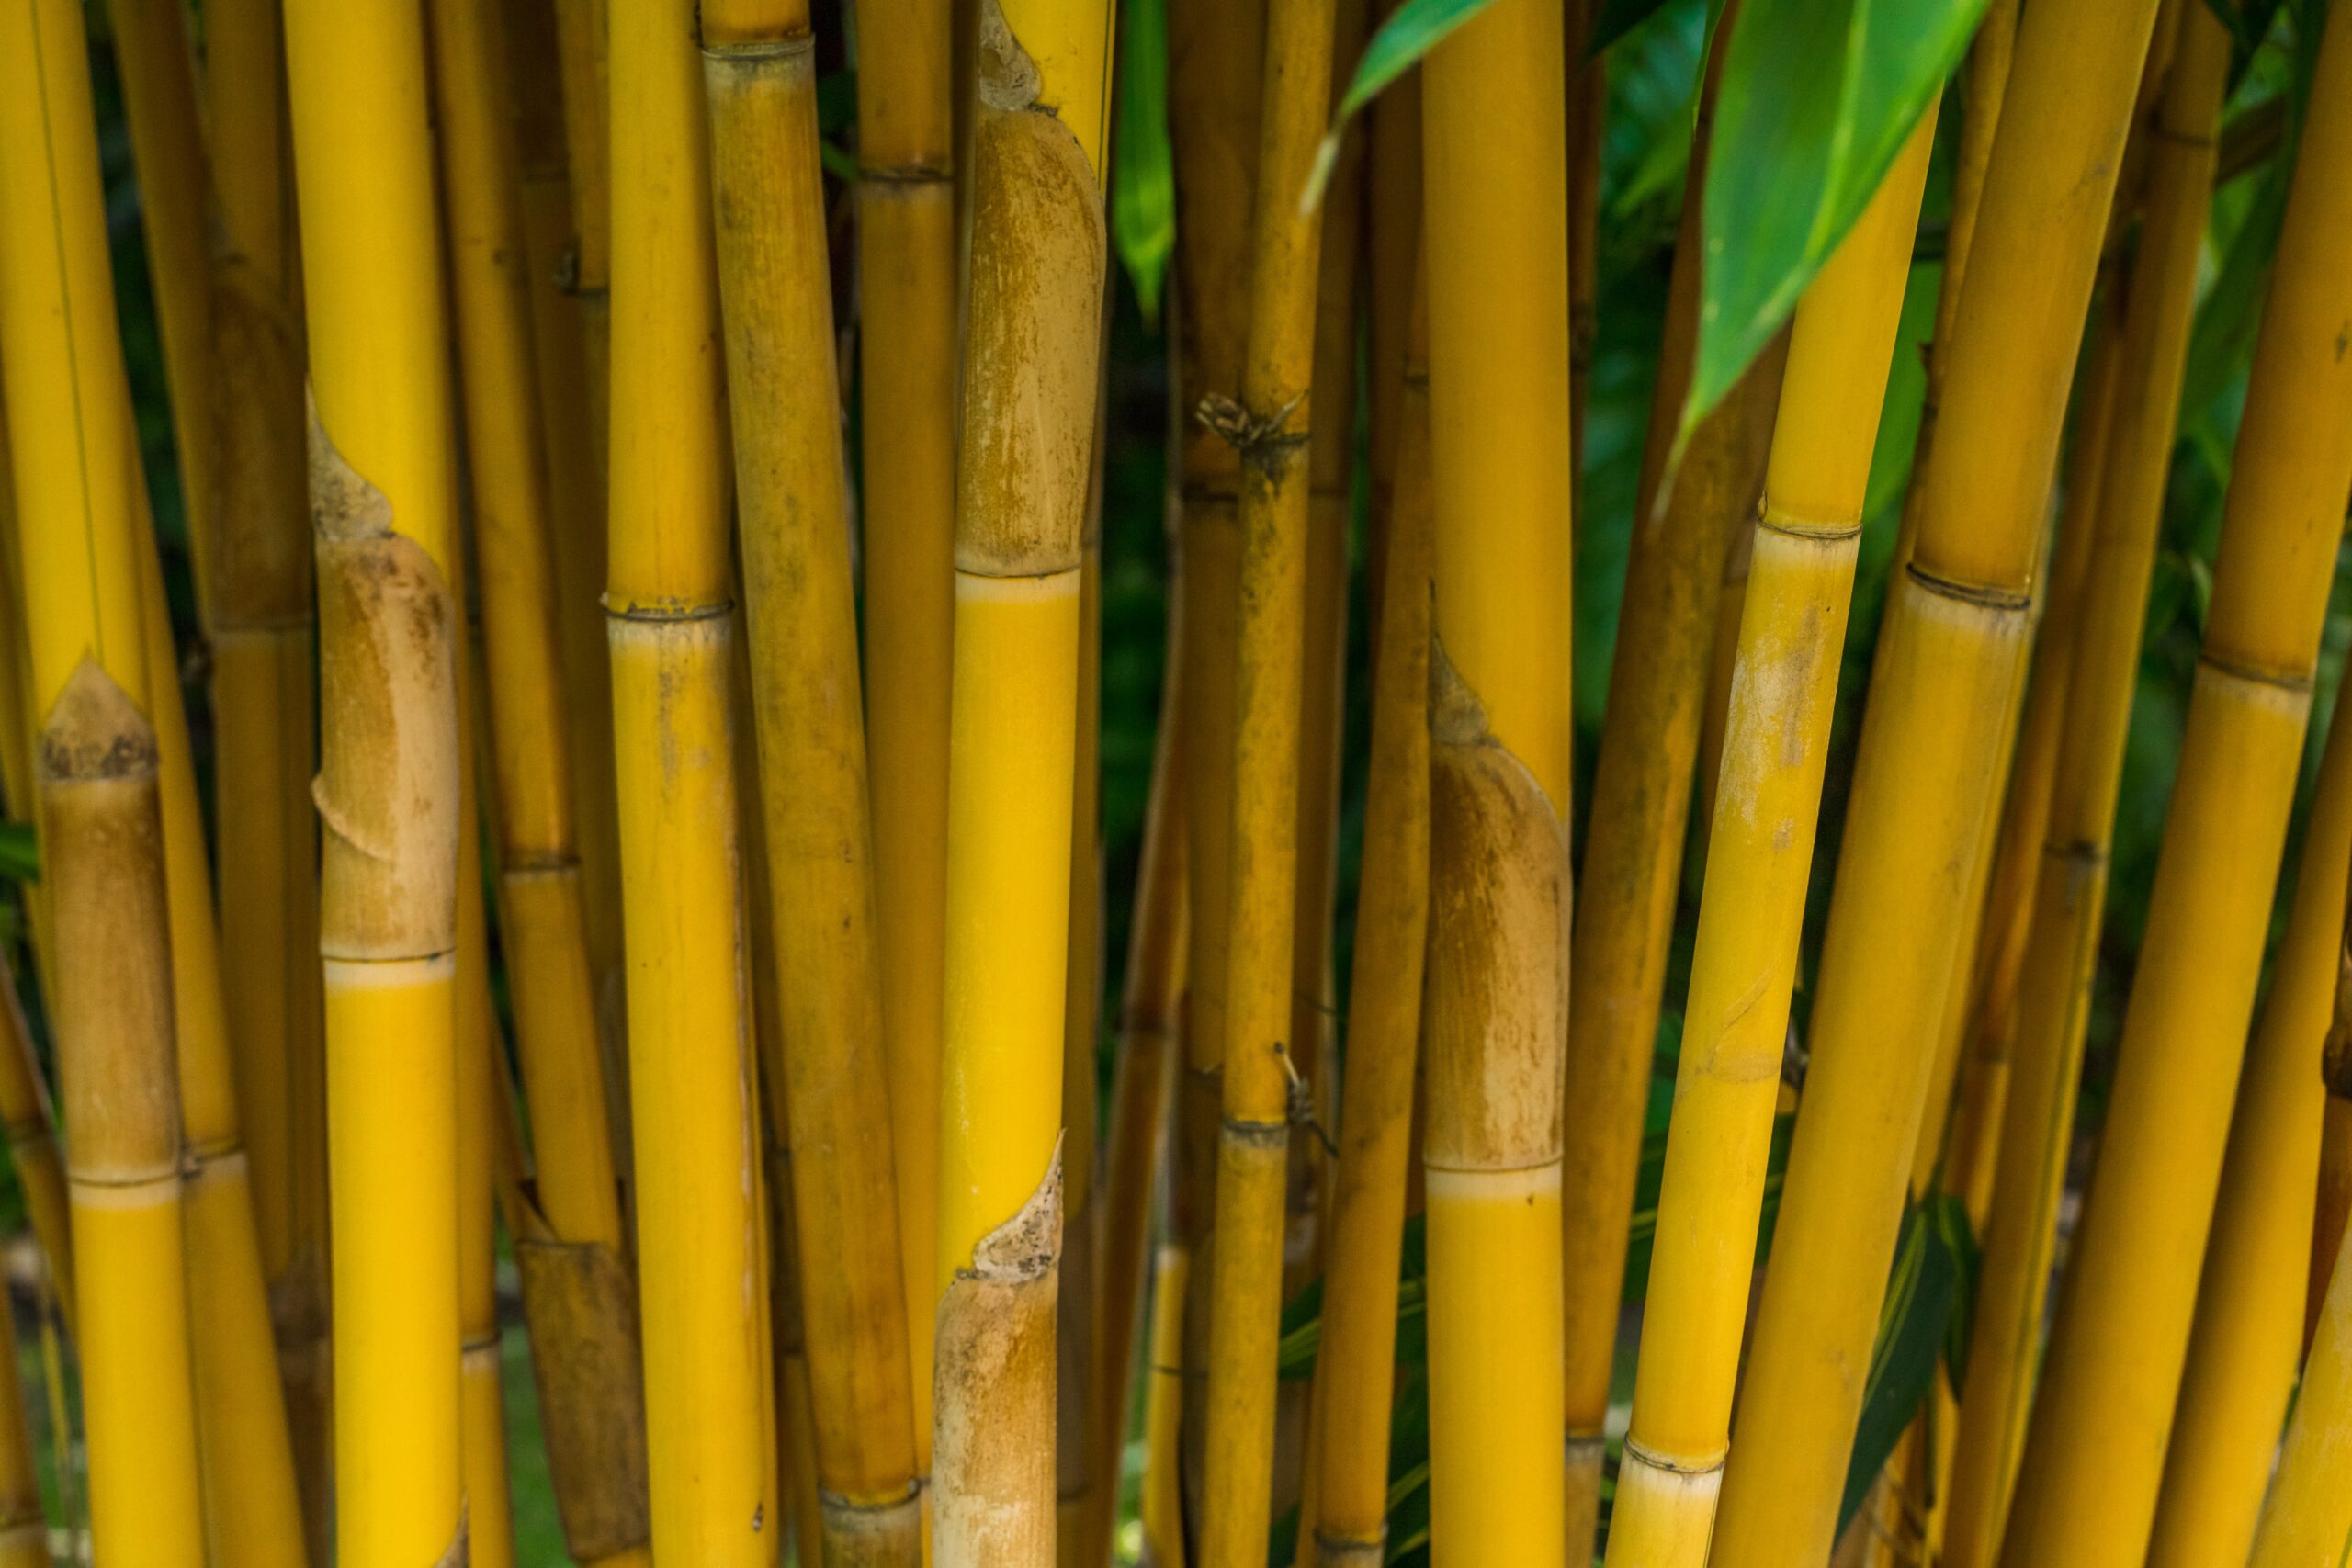 Bannað að nota plast með bambus undir mat